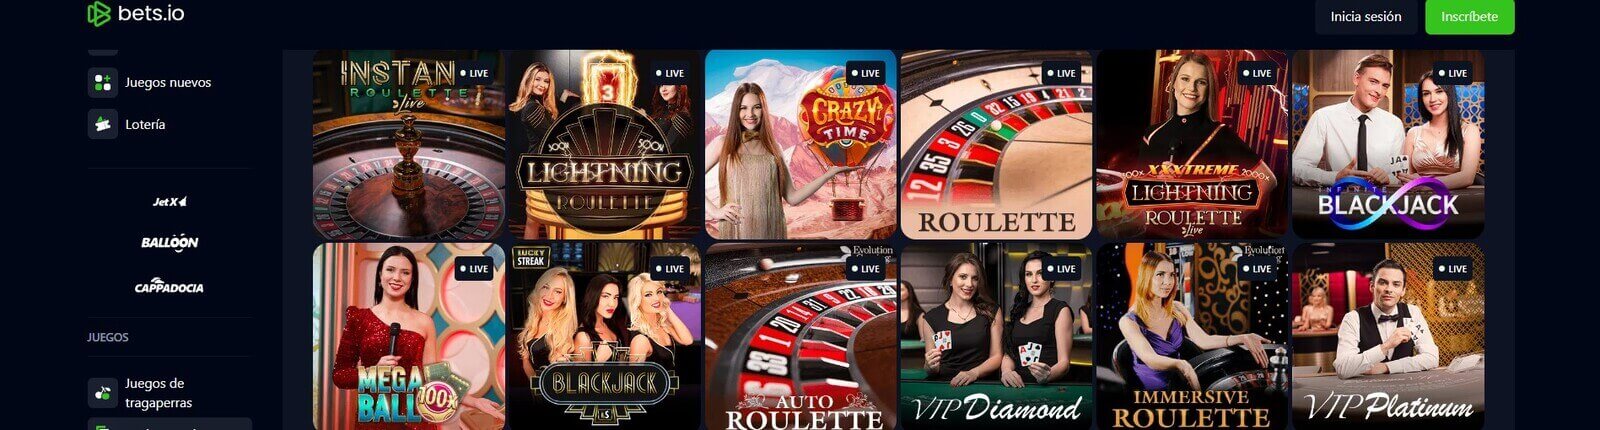 Juegos de casino en vivo de Bets.io Casino online